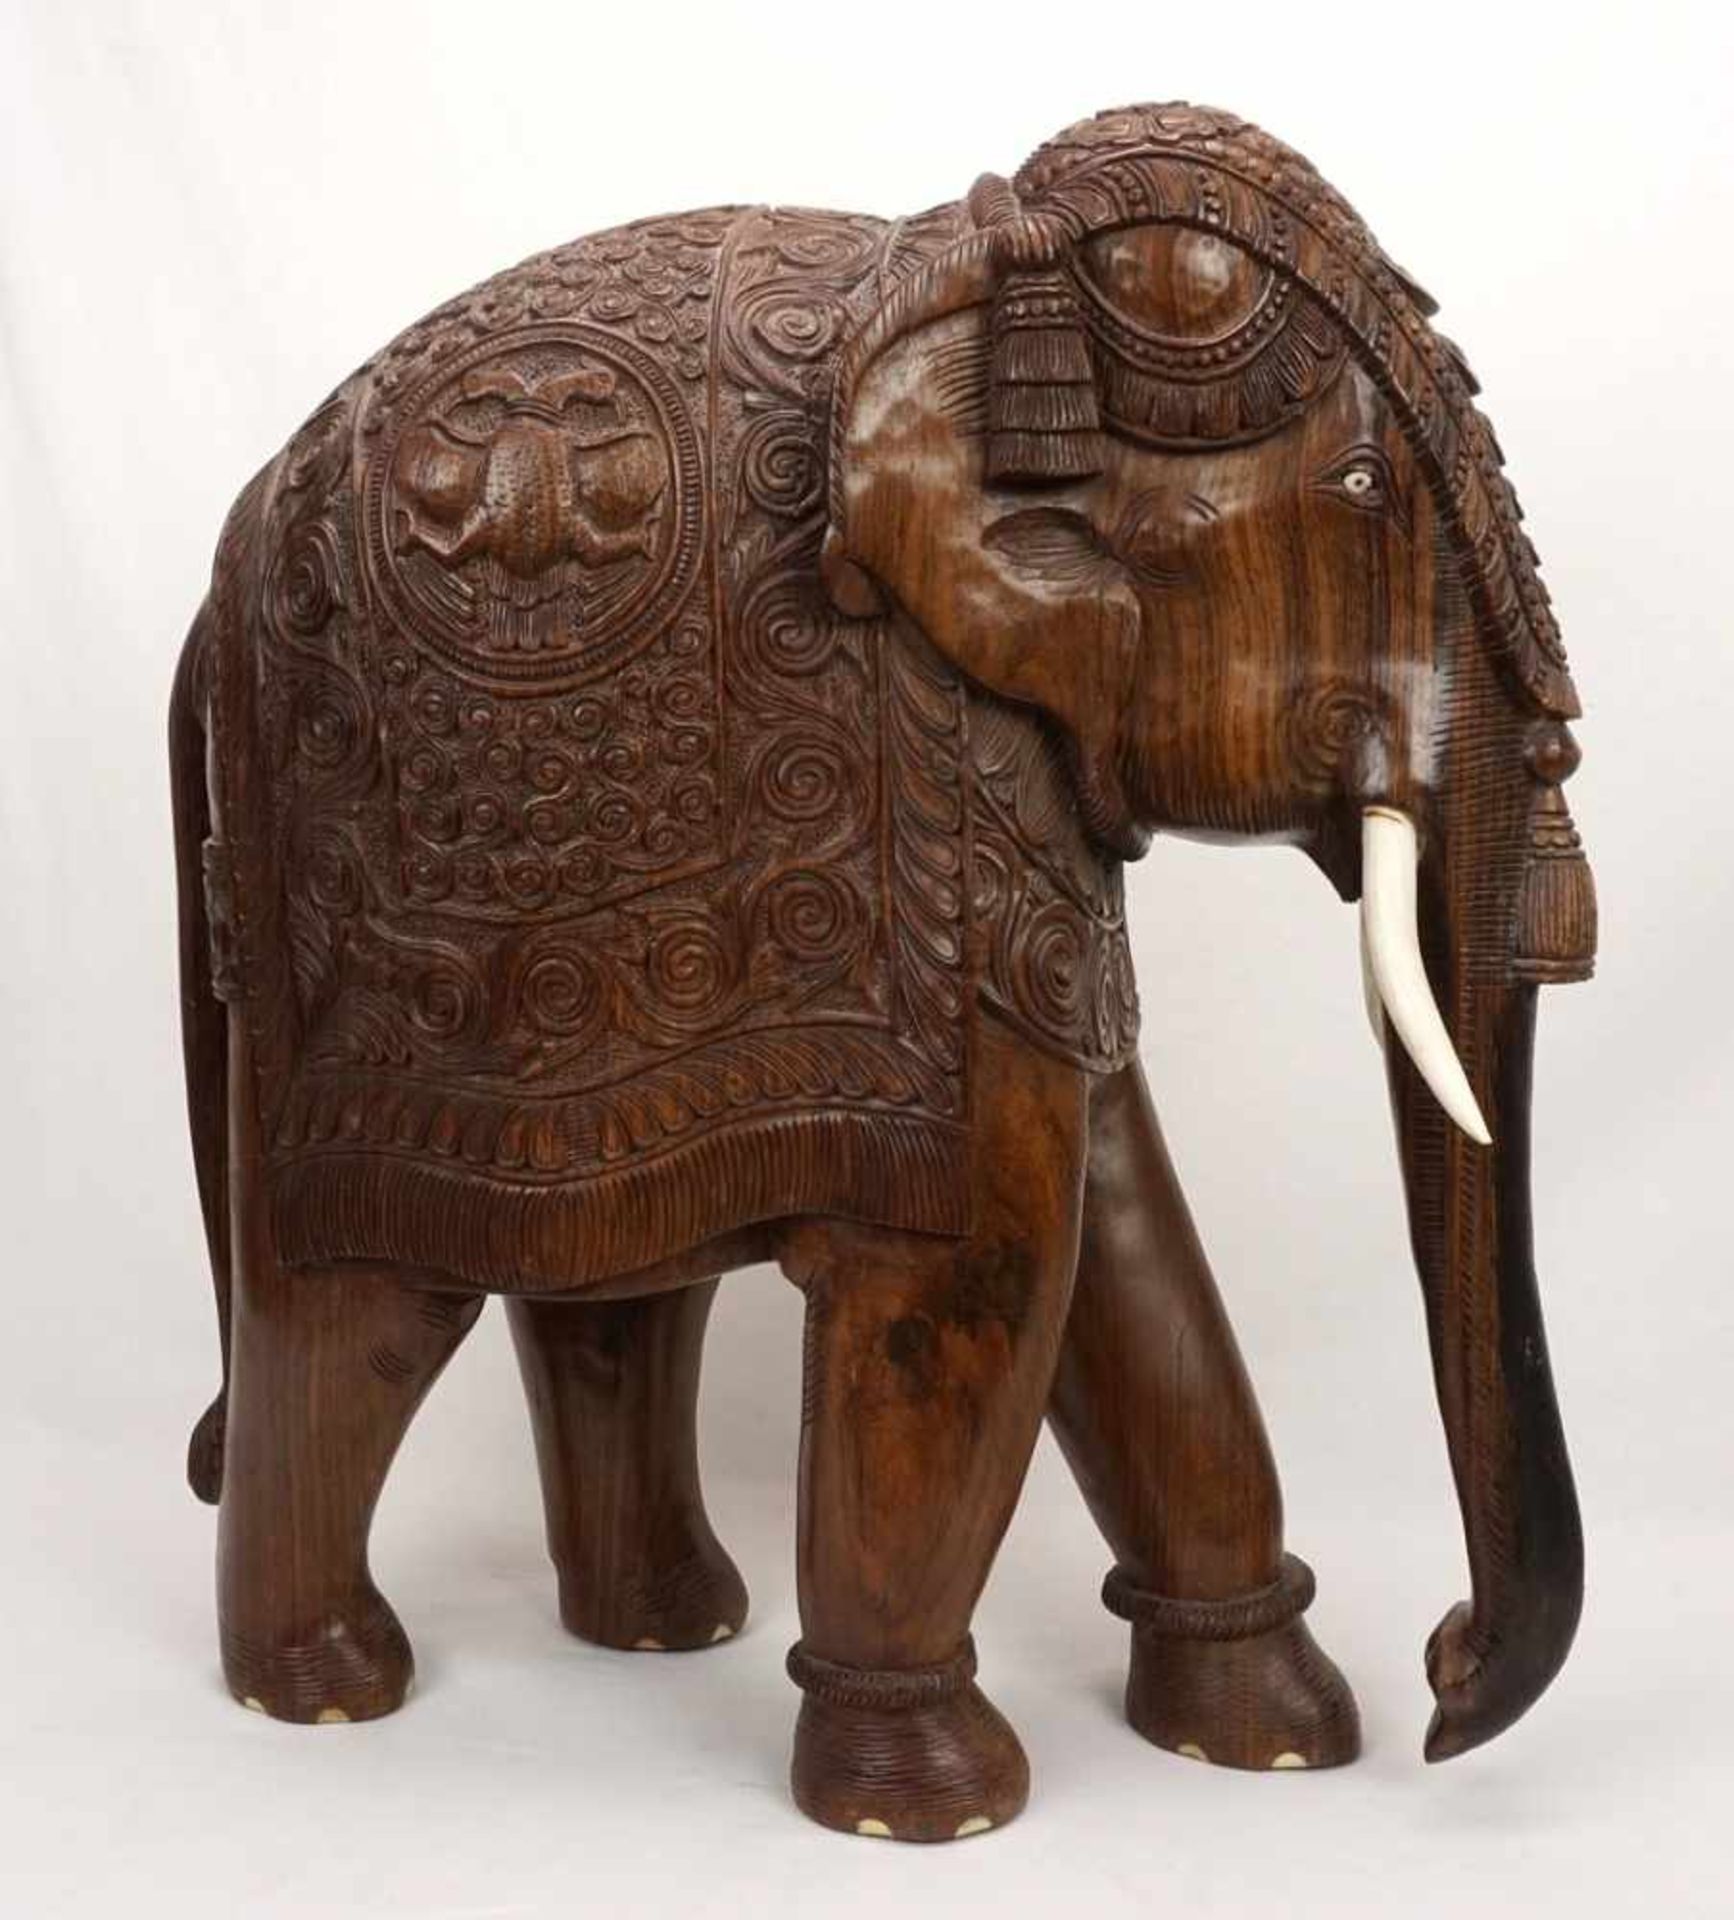 Großer Elefant, Indien, 20. Jh.Palisander, prächtig ausgeschmückter Elefant mit Stoßzähnen aus Bein,